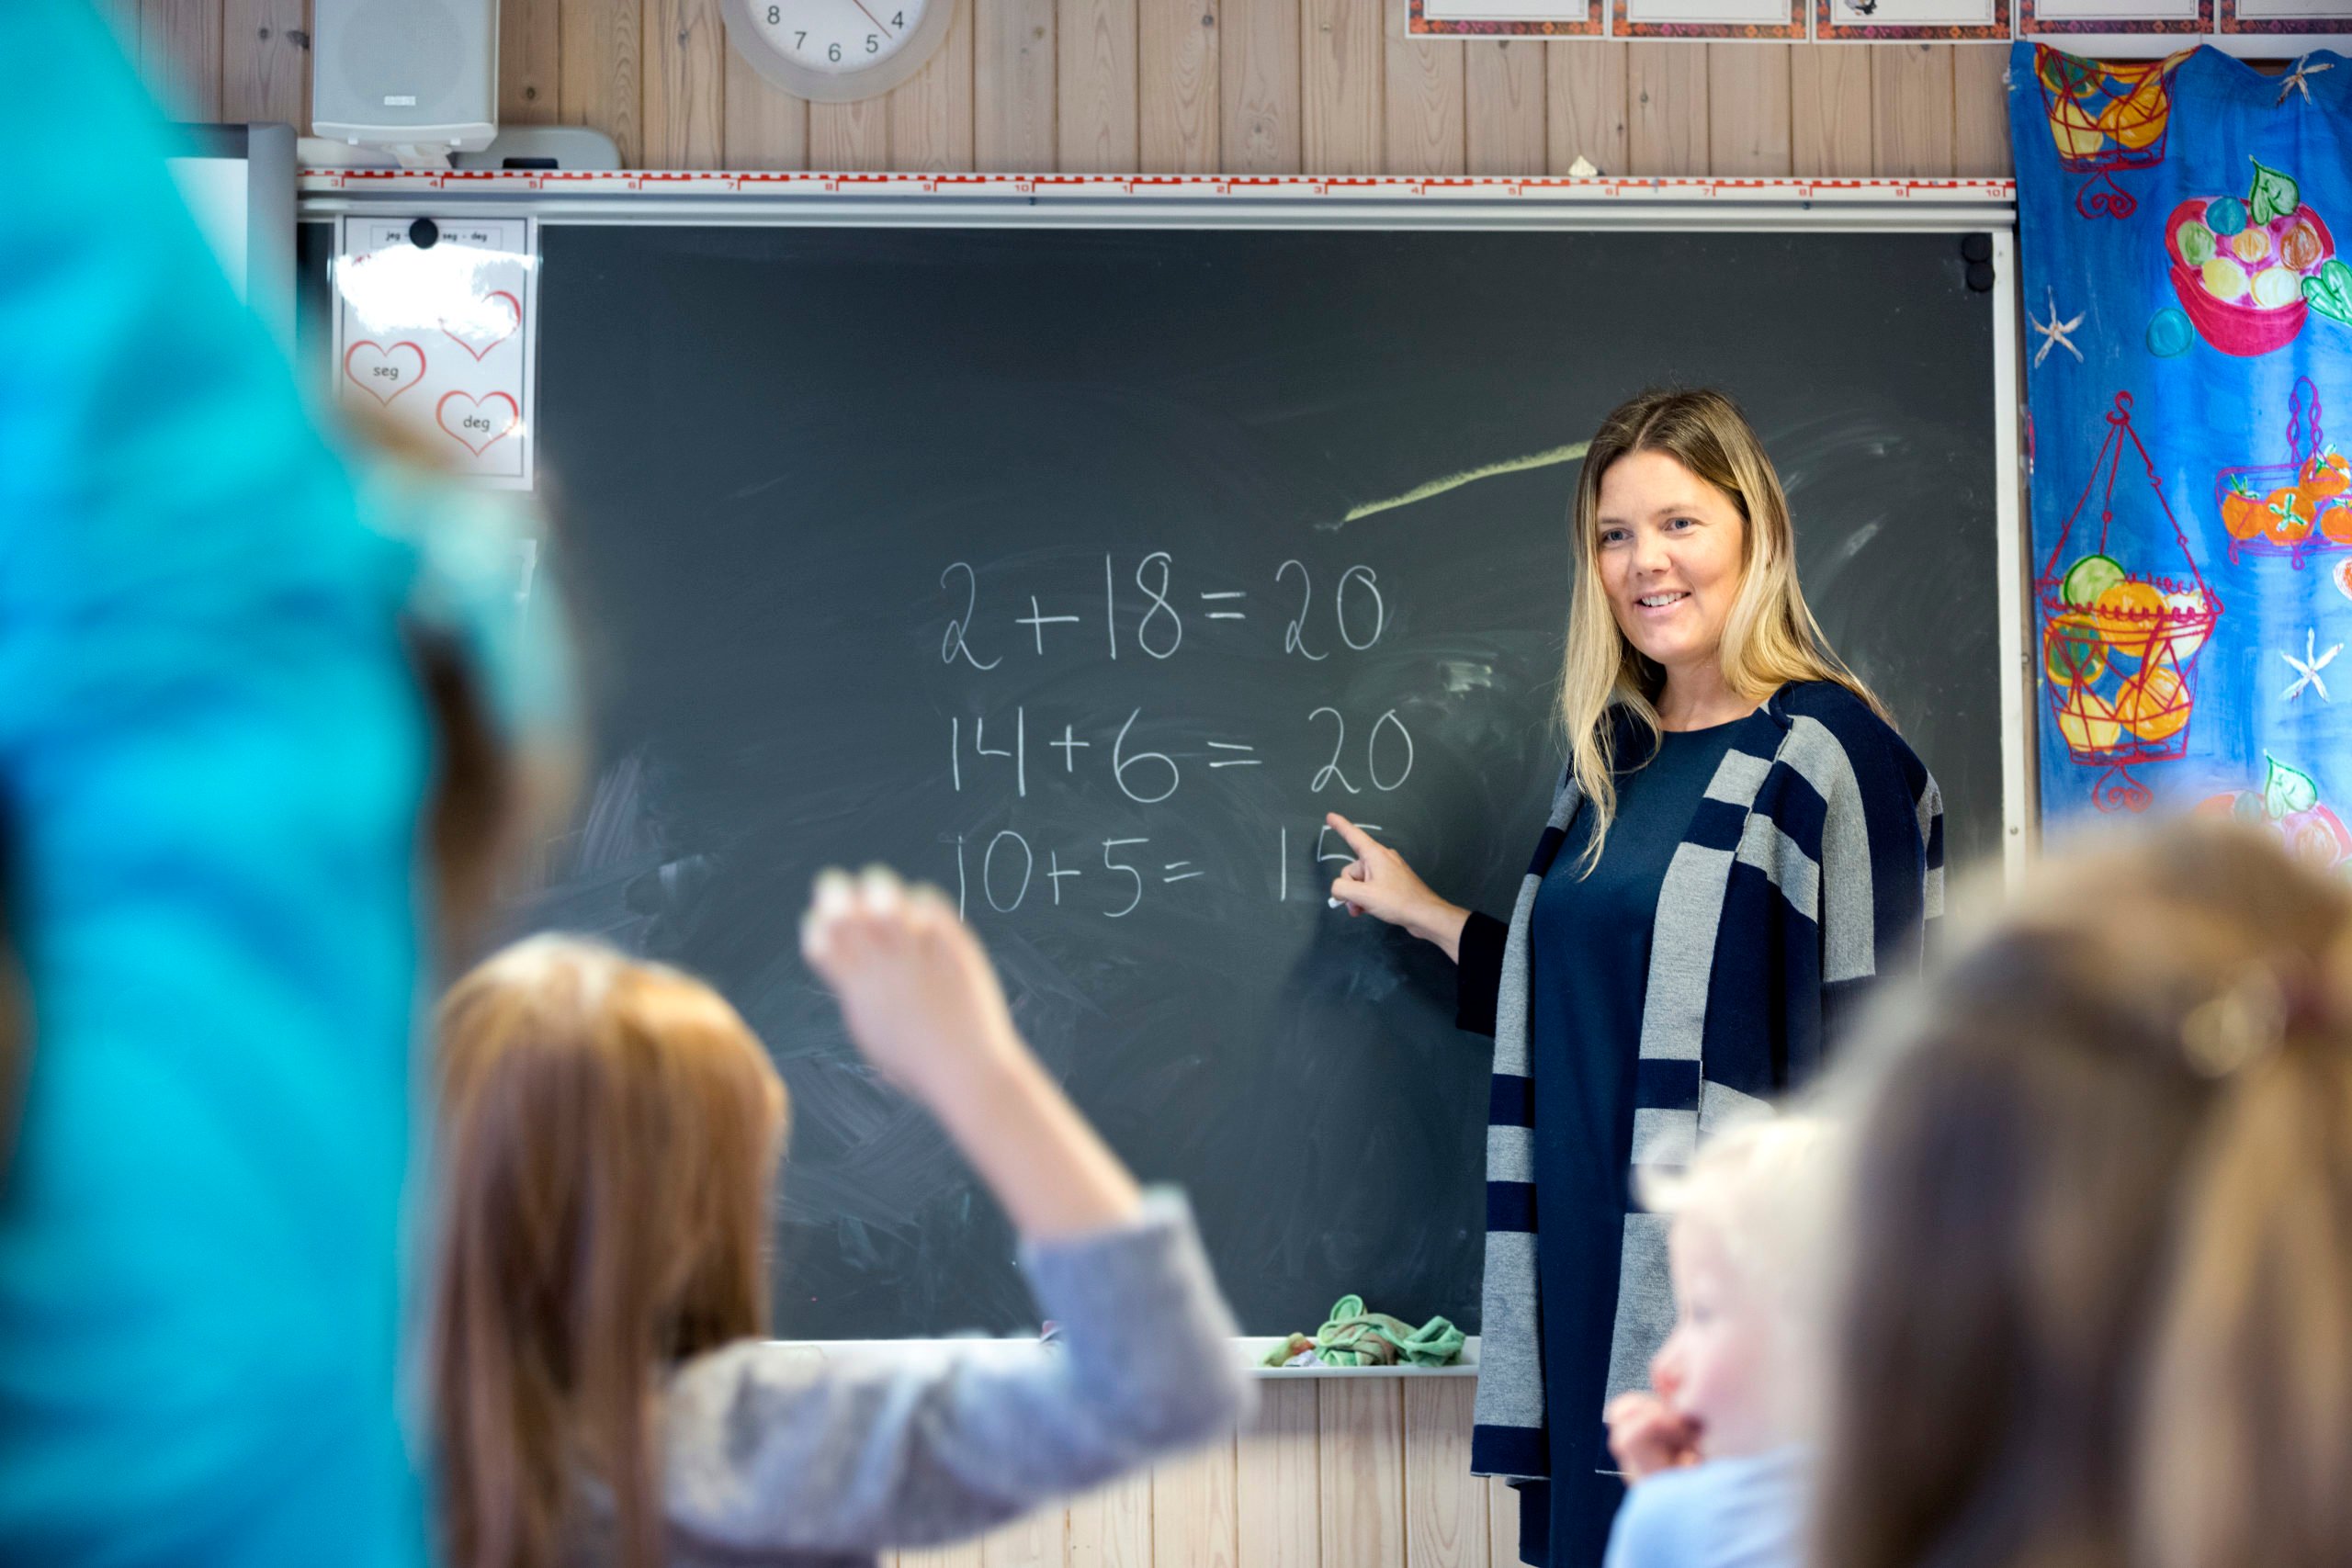 School Madam Blue Sex - Swedish pupils to discuss porn in class in new curriculum